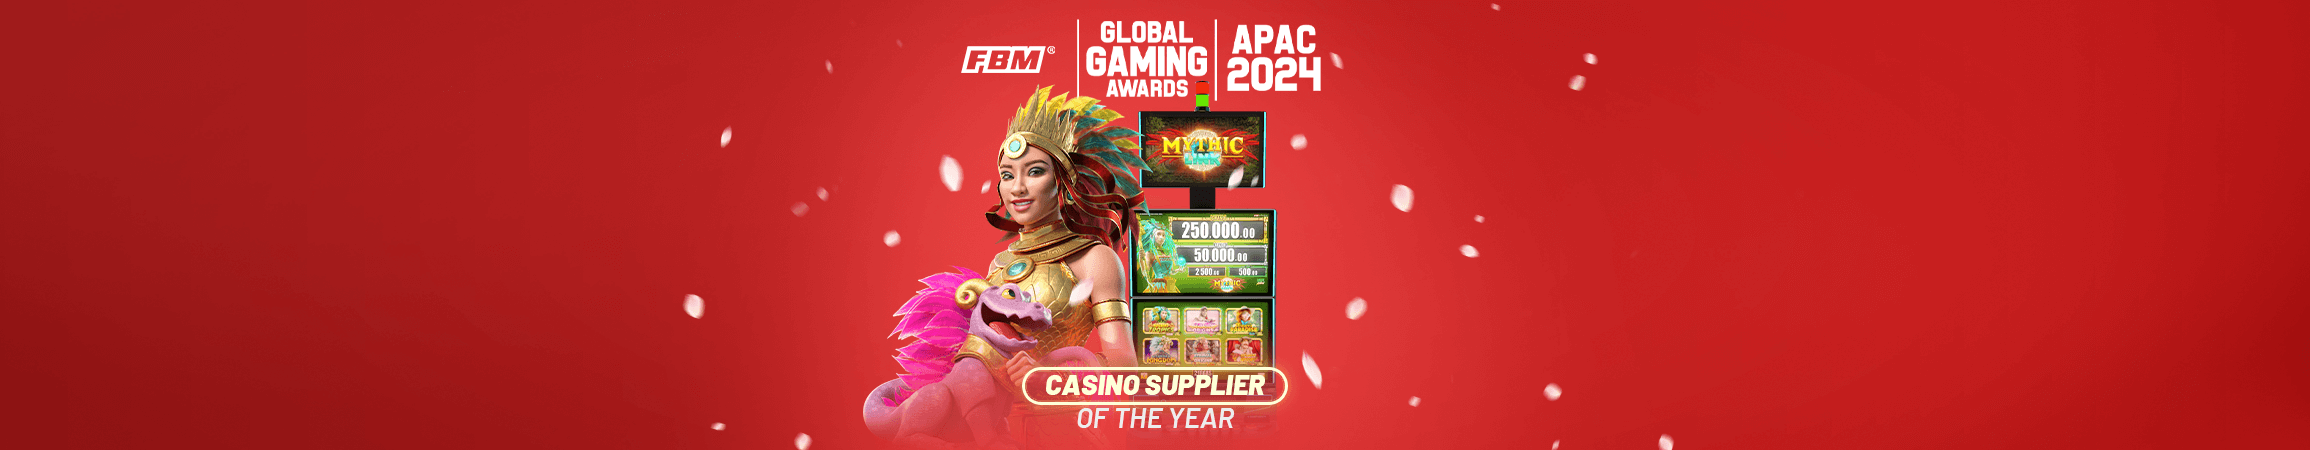 FBM® preseleccionado como “Proveedor de Casino del Año” en los Global Gaming Awards Asia-Pacific